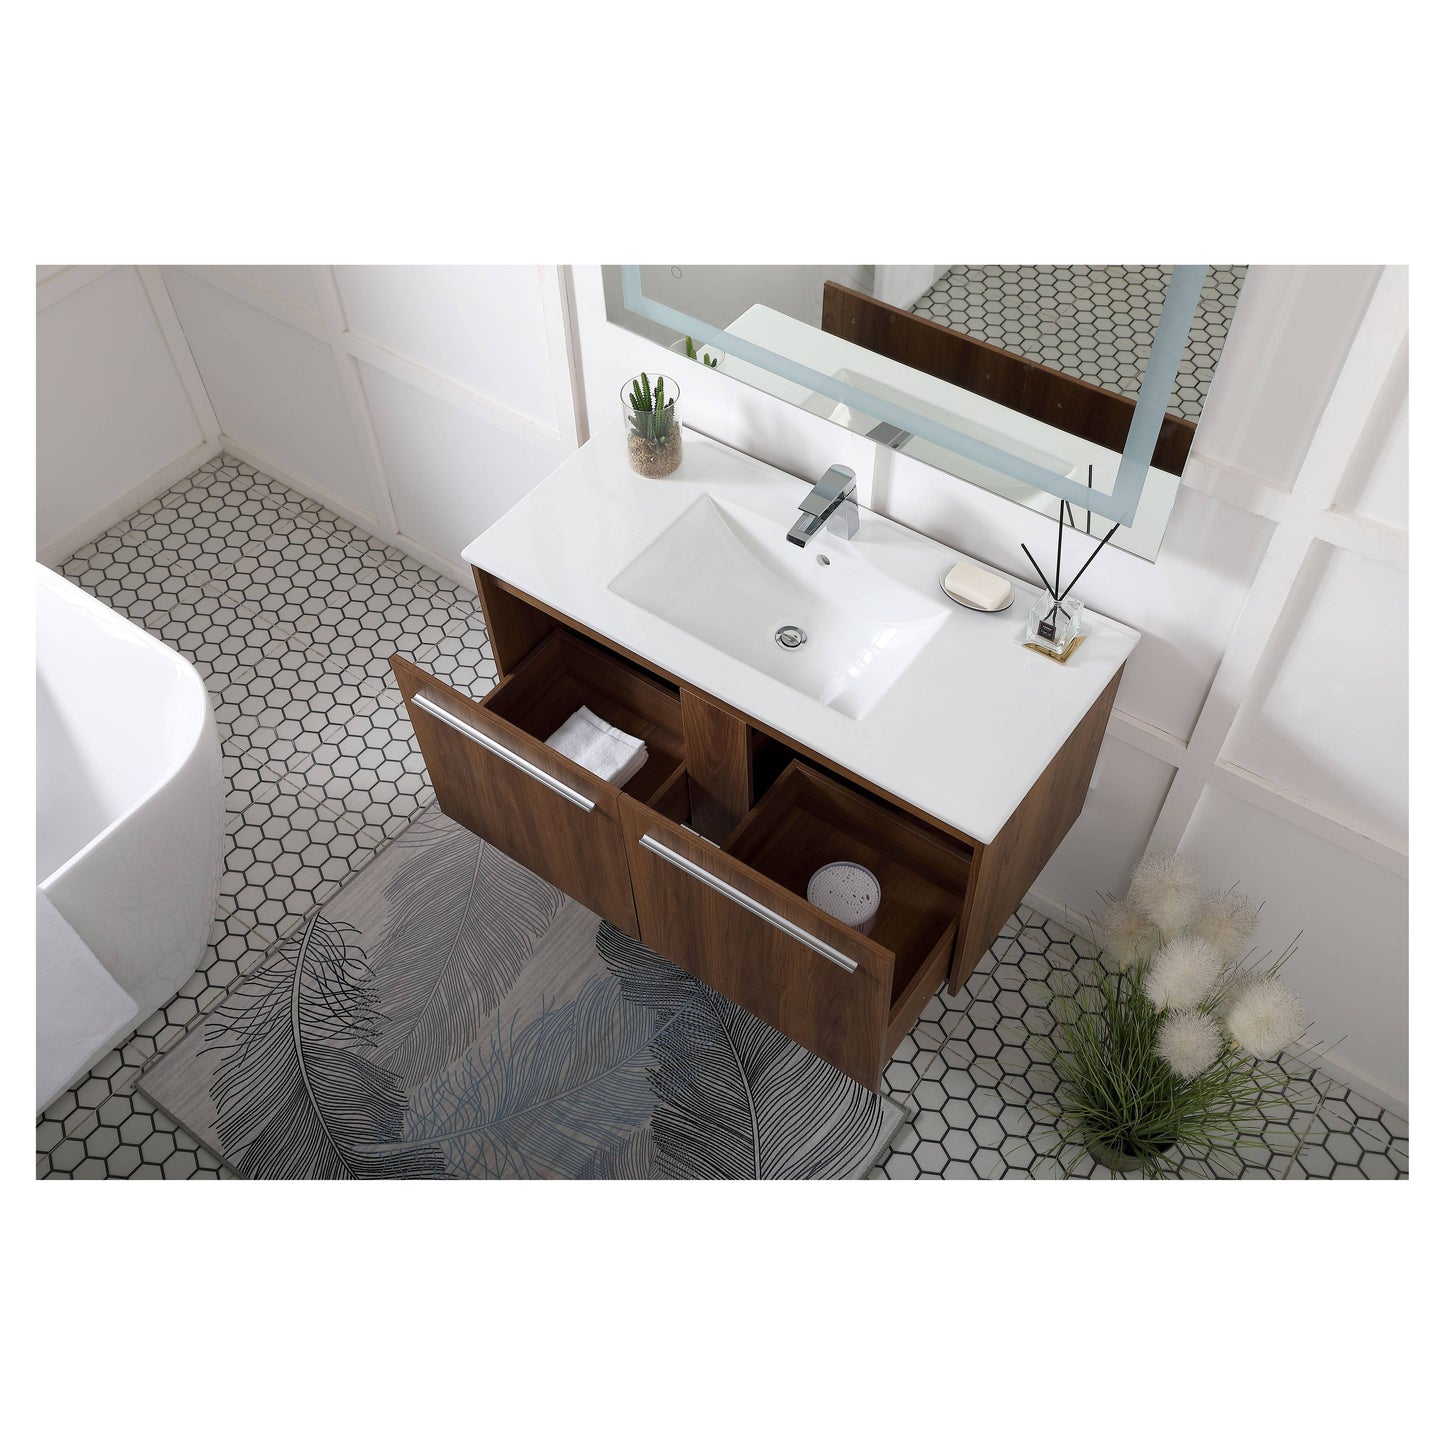 VF45040WB 40" Single Bathroom Floating Vanity in Walnut Brown